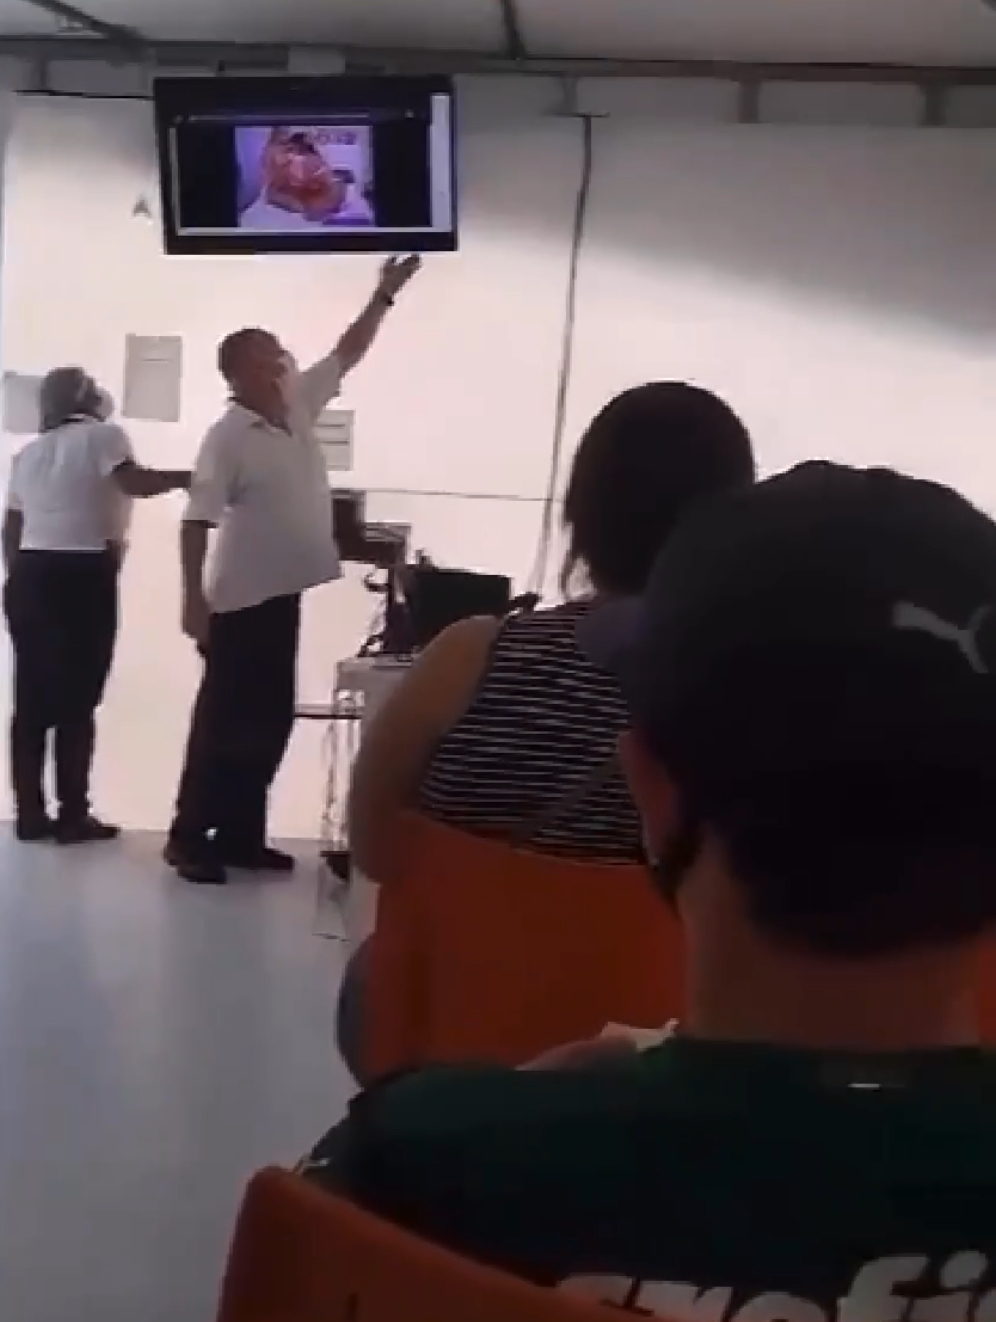 Vídeo pornô passa em televisão da recepção de UPA em Minas Gerais